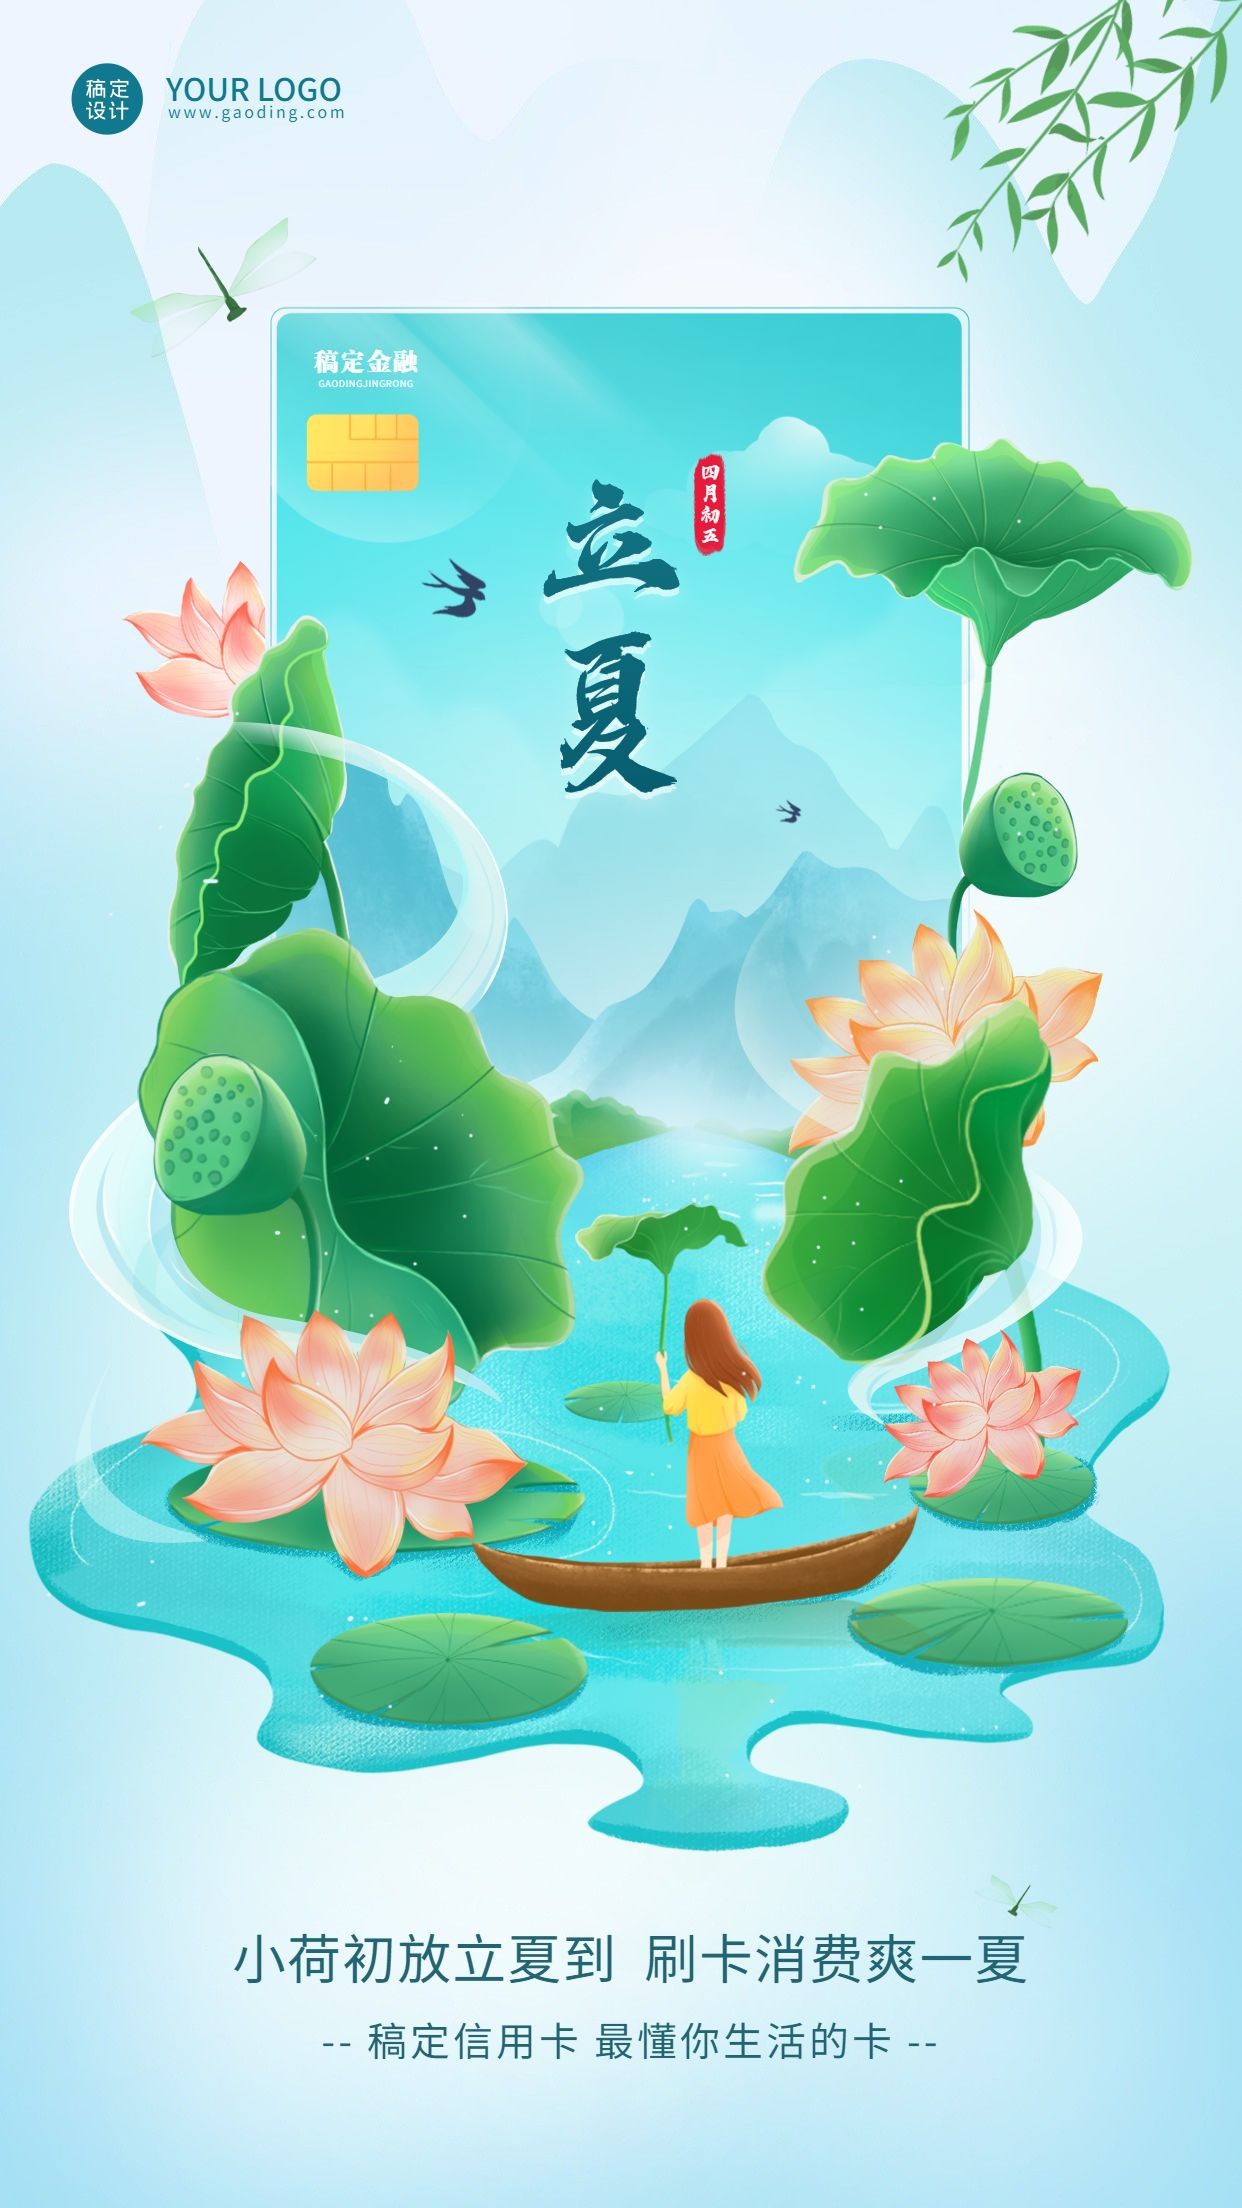 立夏金融保险节气祝福创意插画清新中国风海报